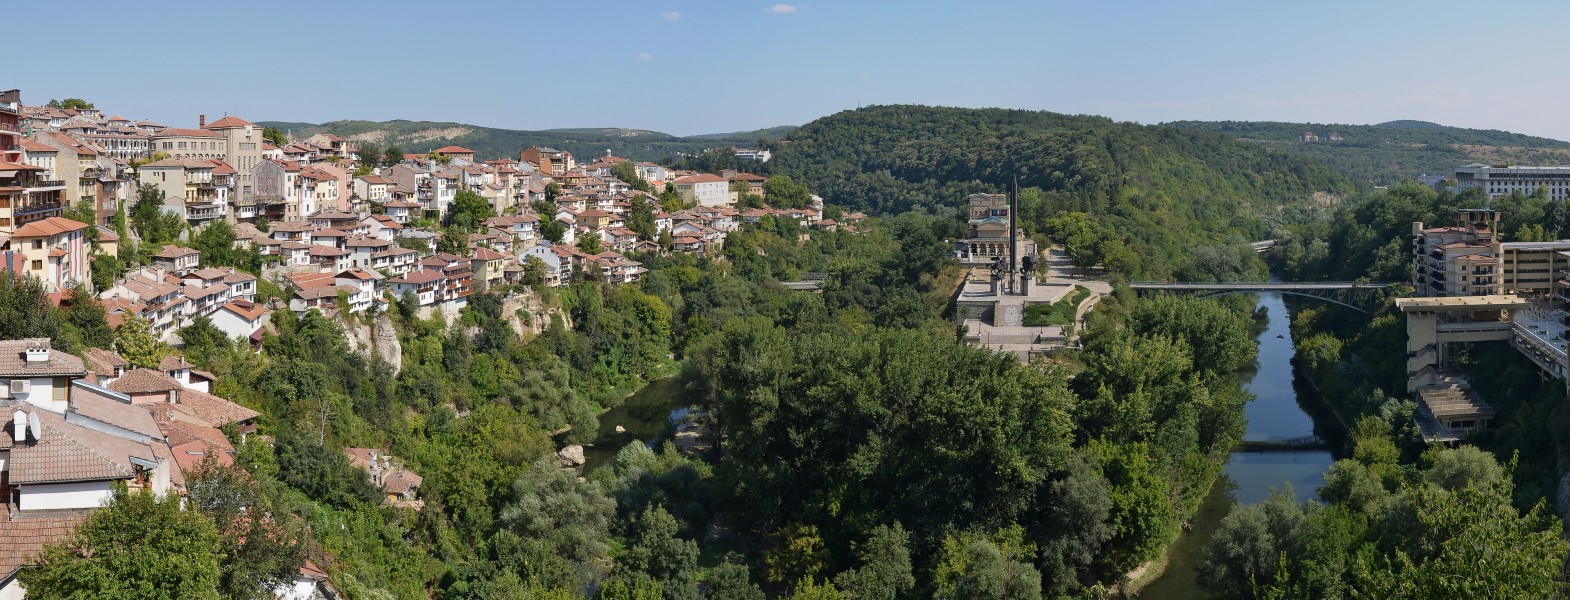 Veliko Tarnovo (Велико Търново) - panorama